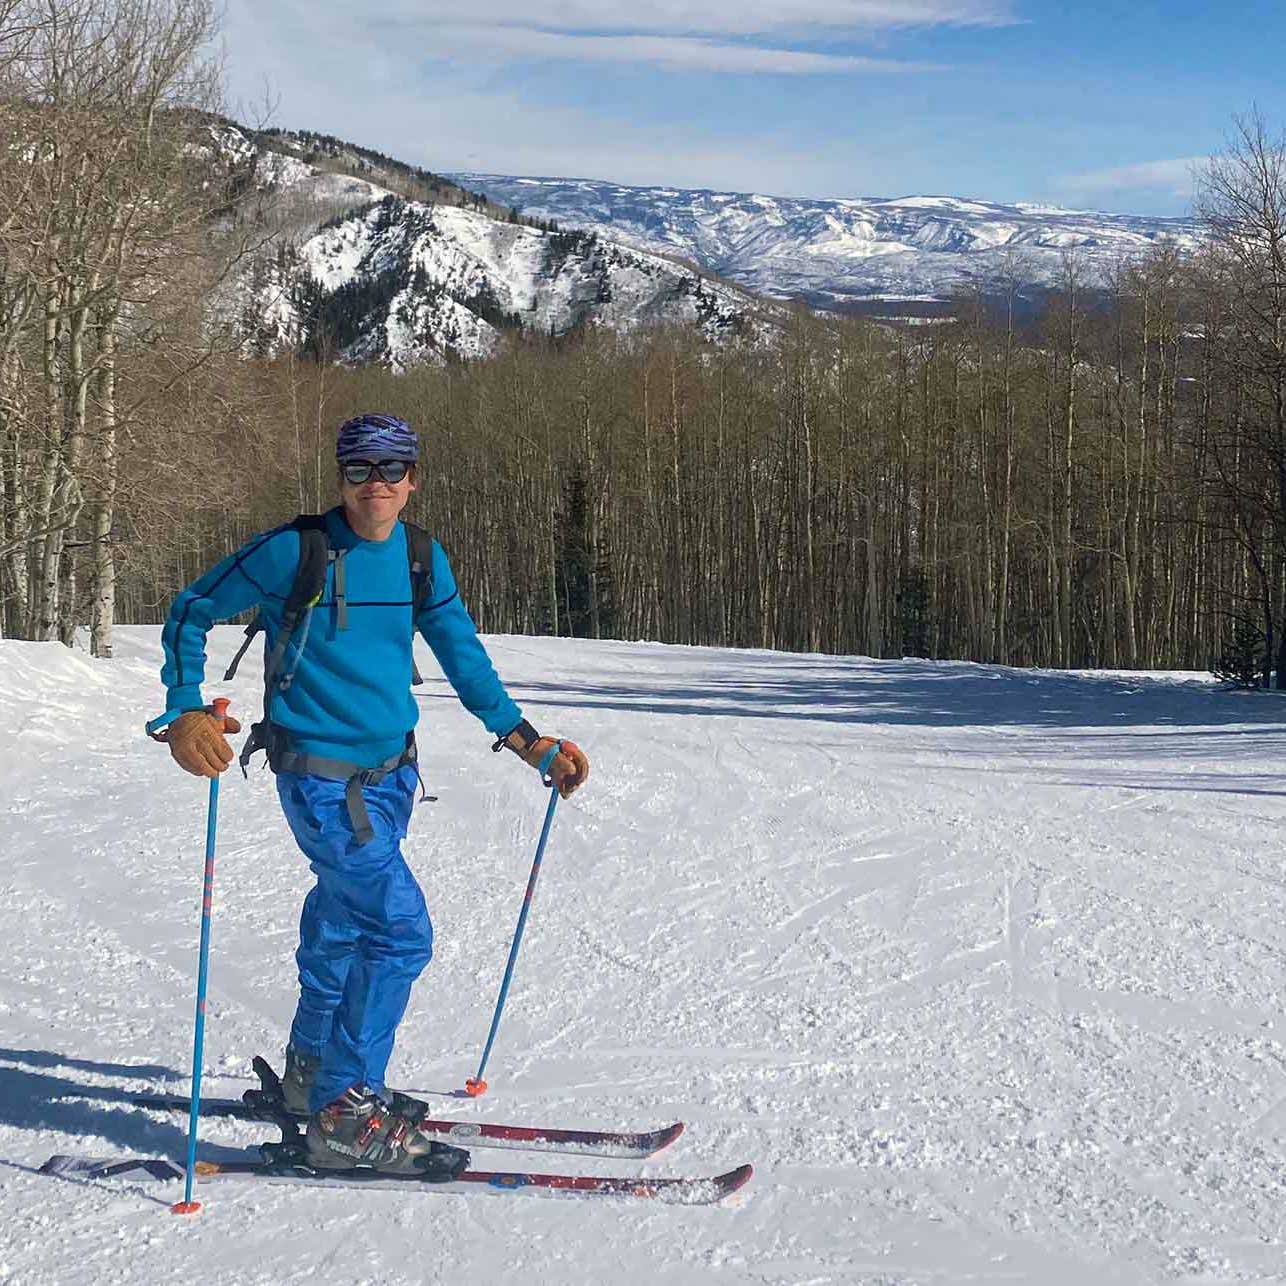 Man skiing at Sunlight Mountain Resort in Glenwood